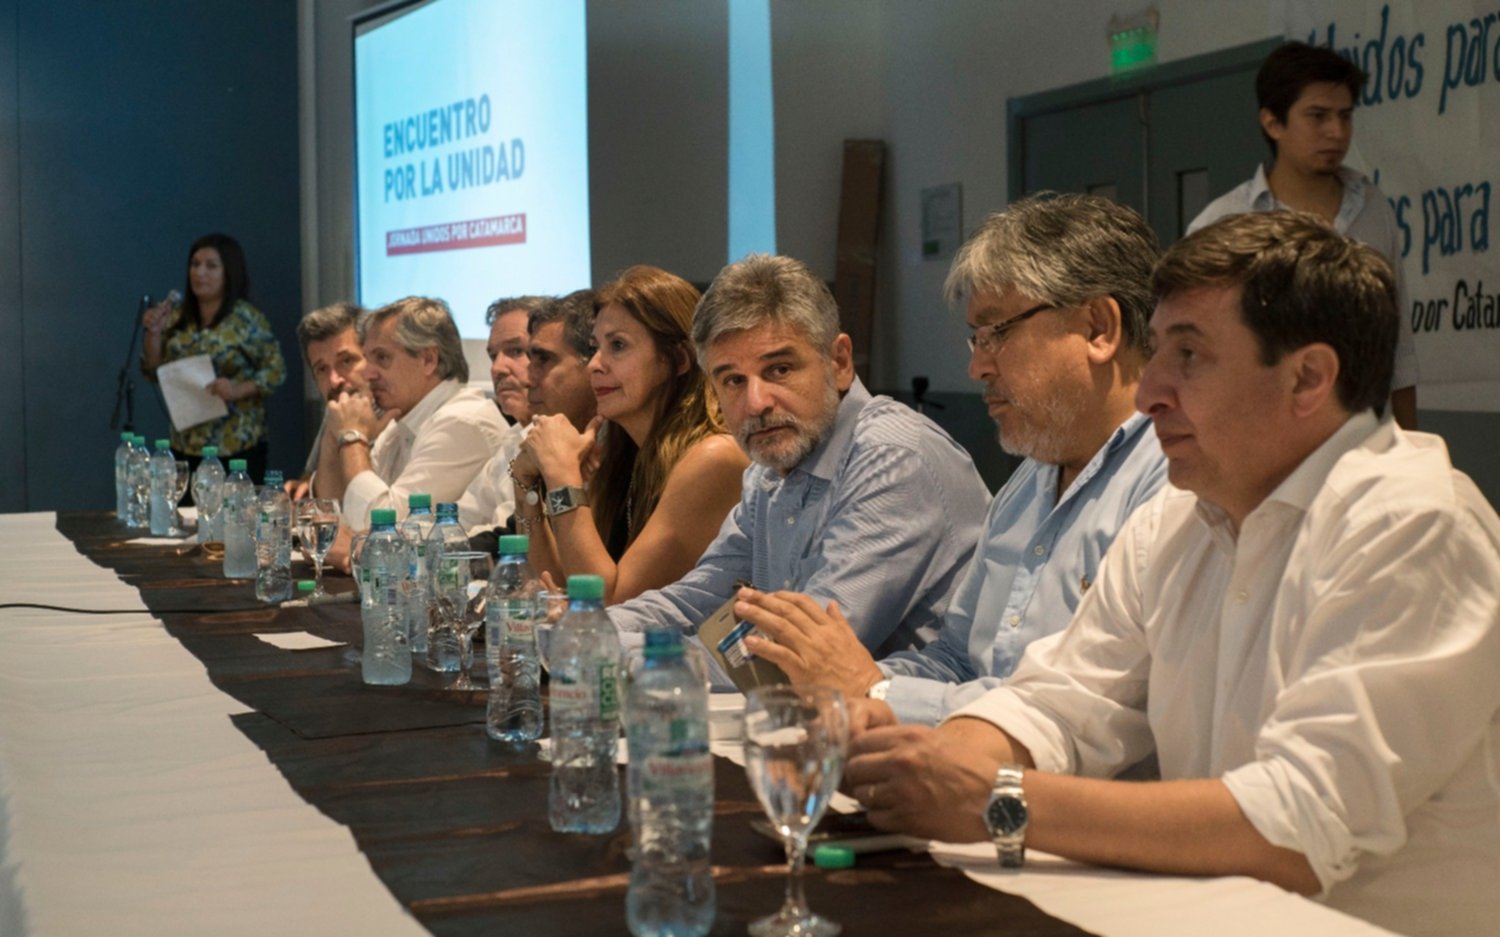 Críticas a Macri en Catamarca en el marco del "Encuentro por la Unidad" peronista